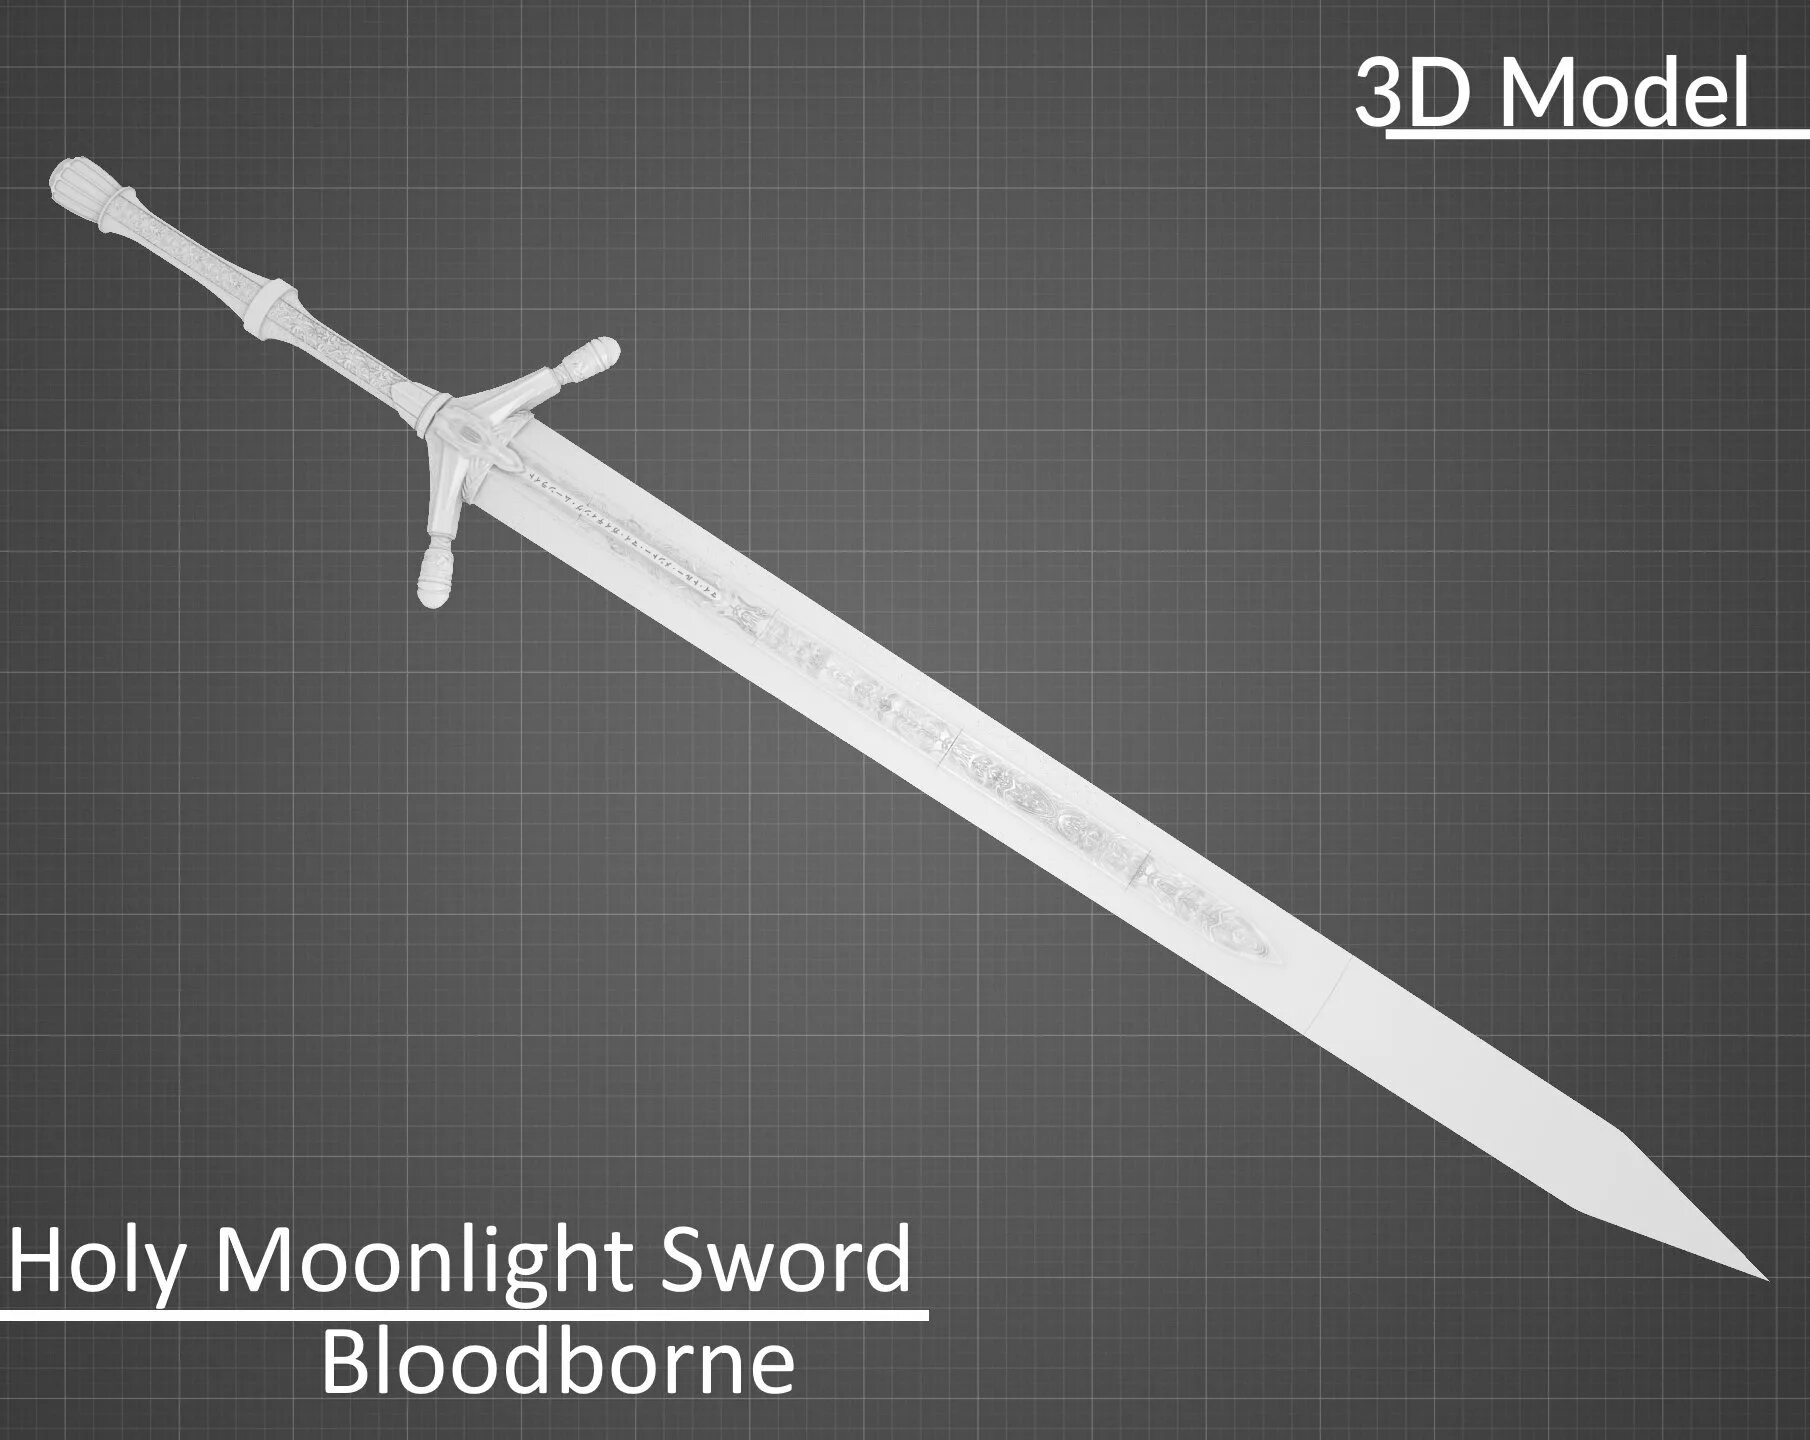 Moonlight sword. Лунный меч Bloodborne. Меч Священного лунного света Bloodborne. Бладборн меч лунного света. Bloodborne Holy Moonlight Sword.